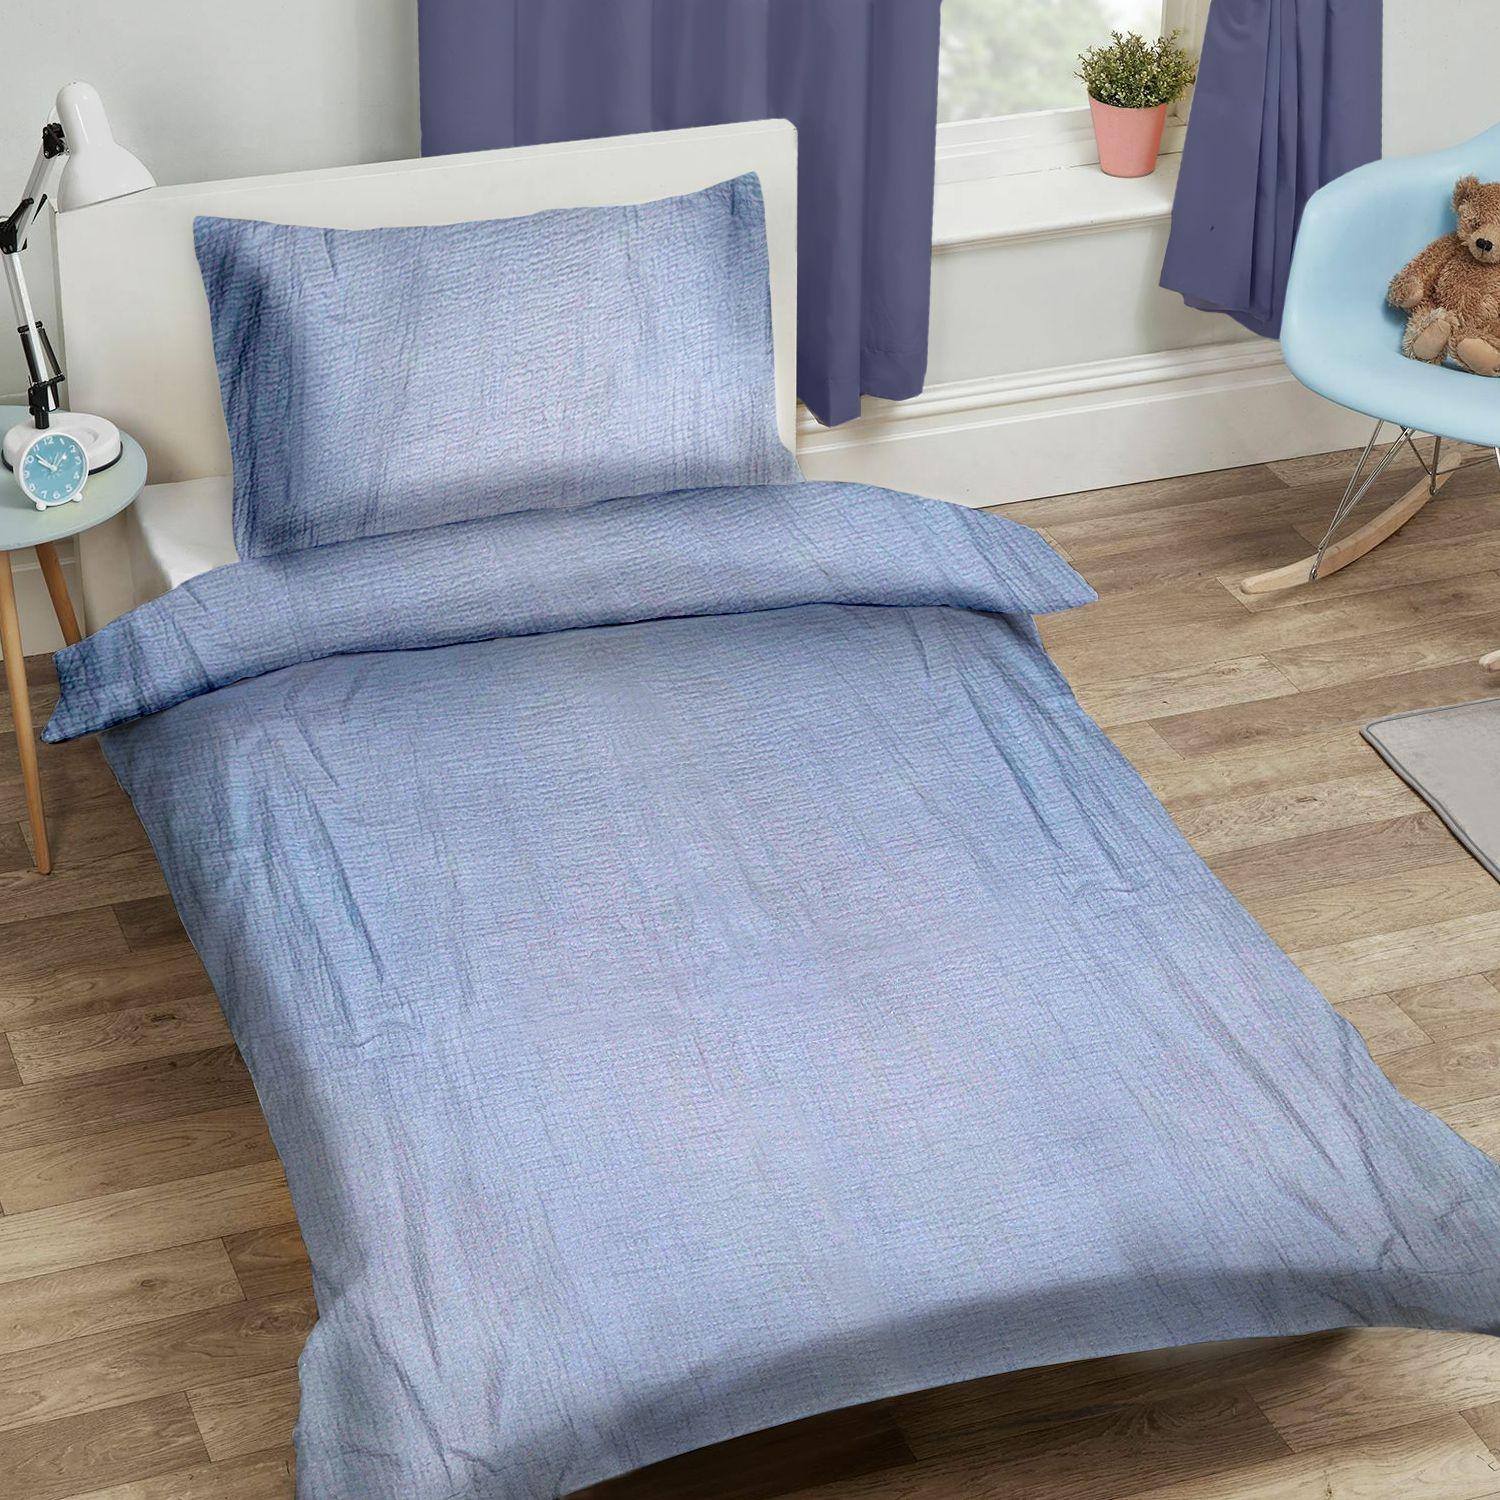 Muslin children's bedding set 90x120cm - light blue